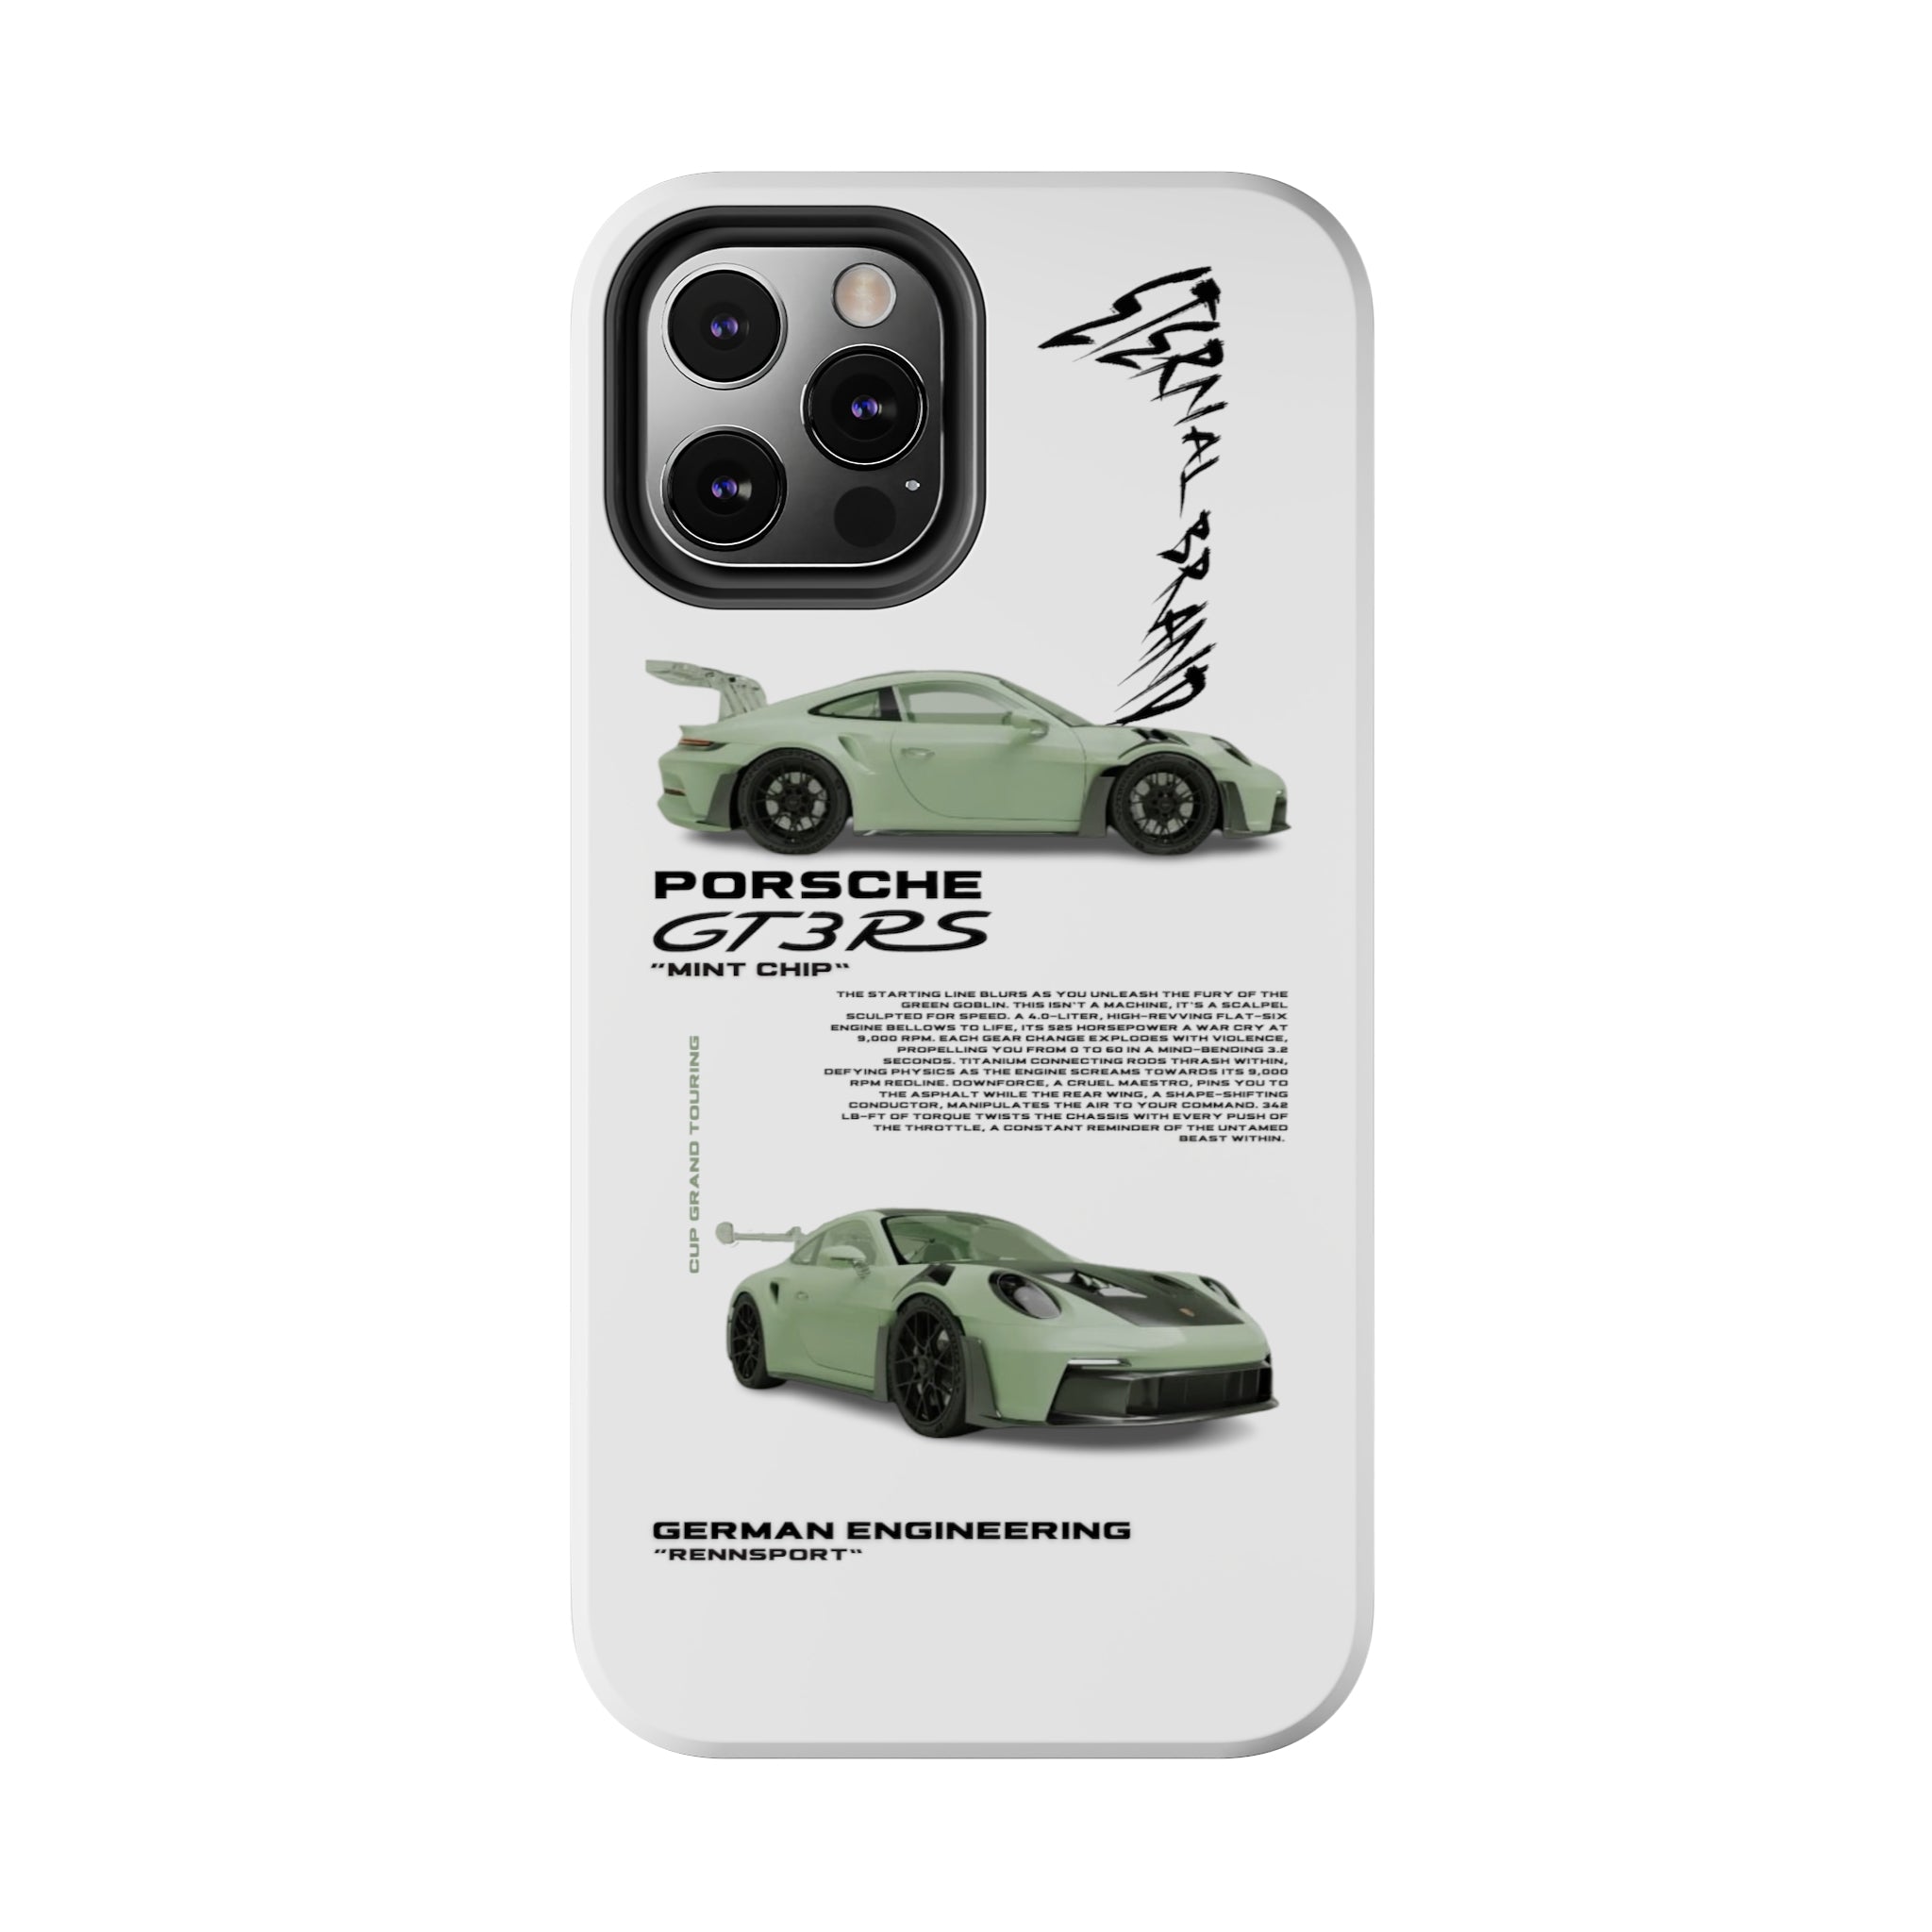 Porsche GT3 RS "Mint Chip"